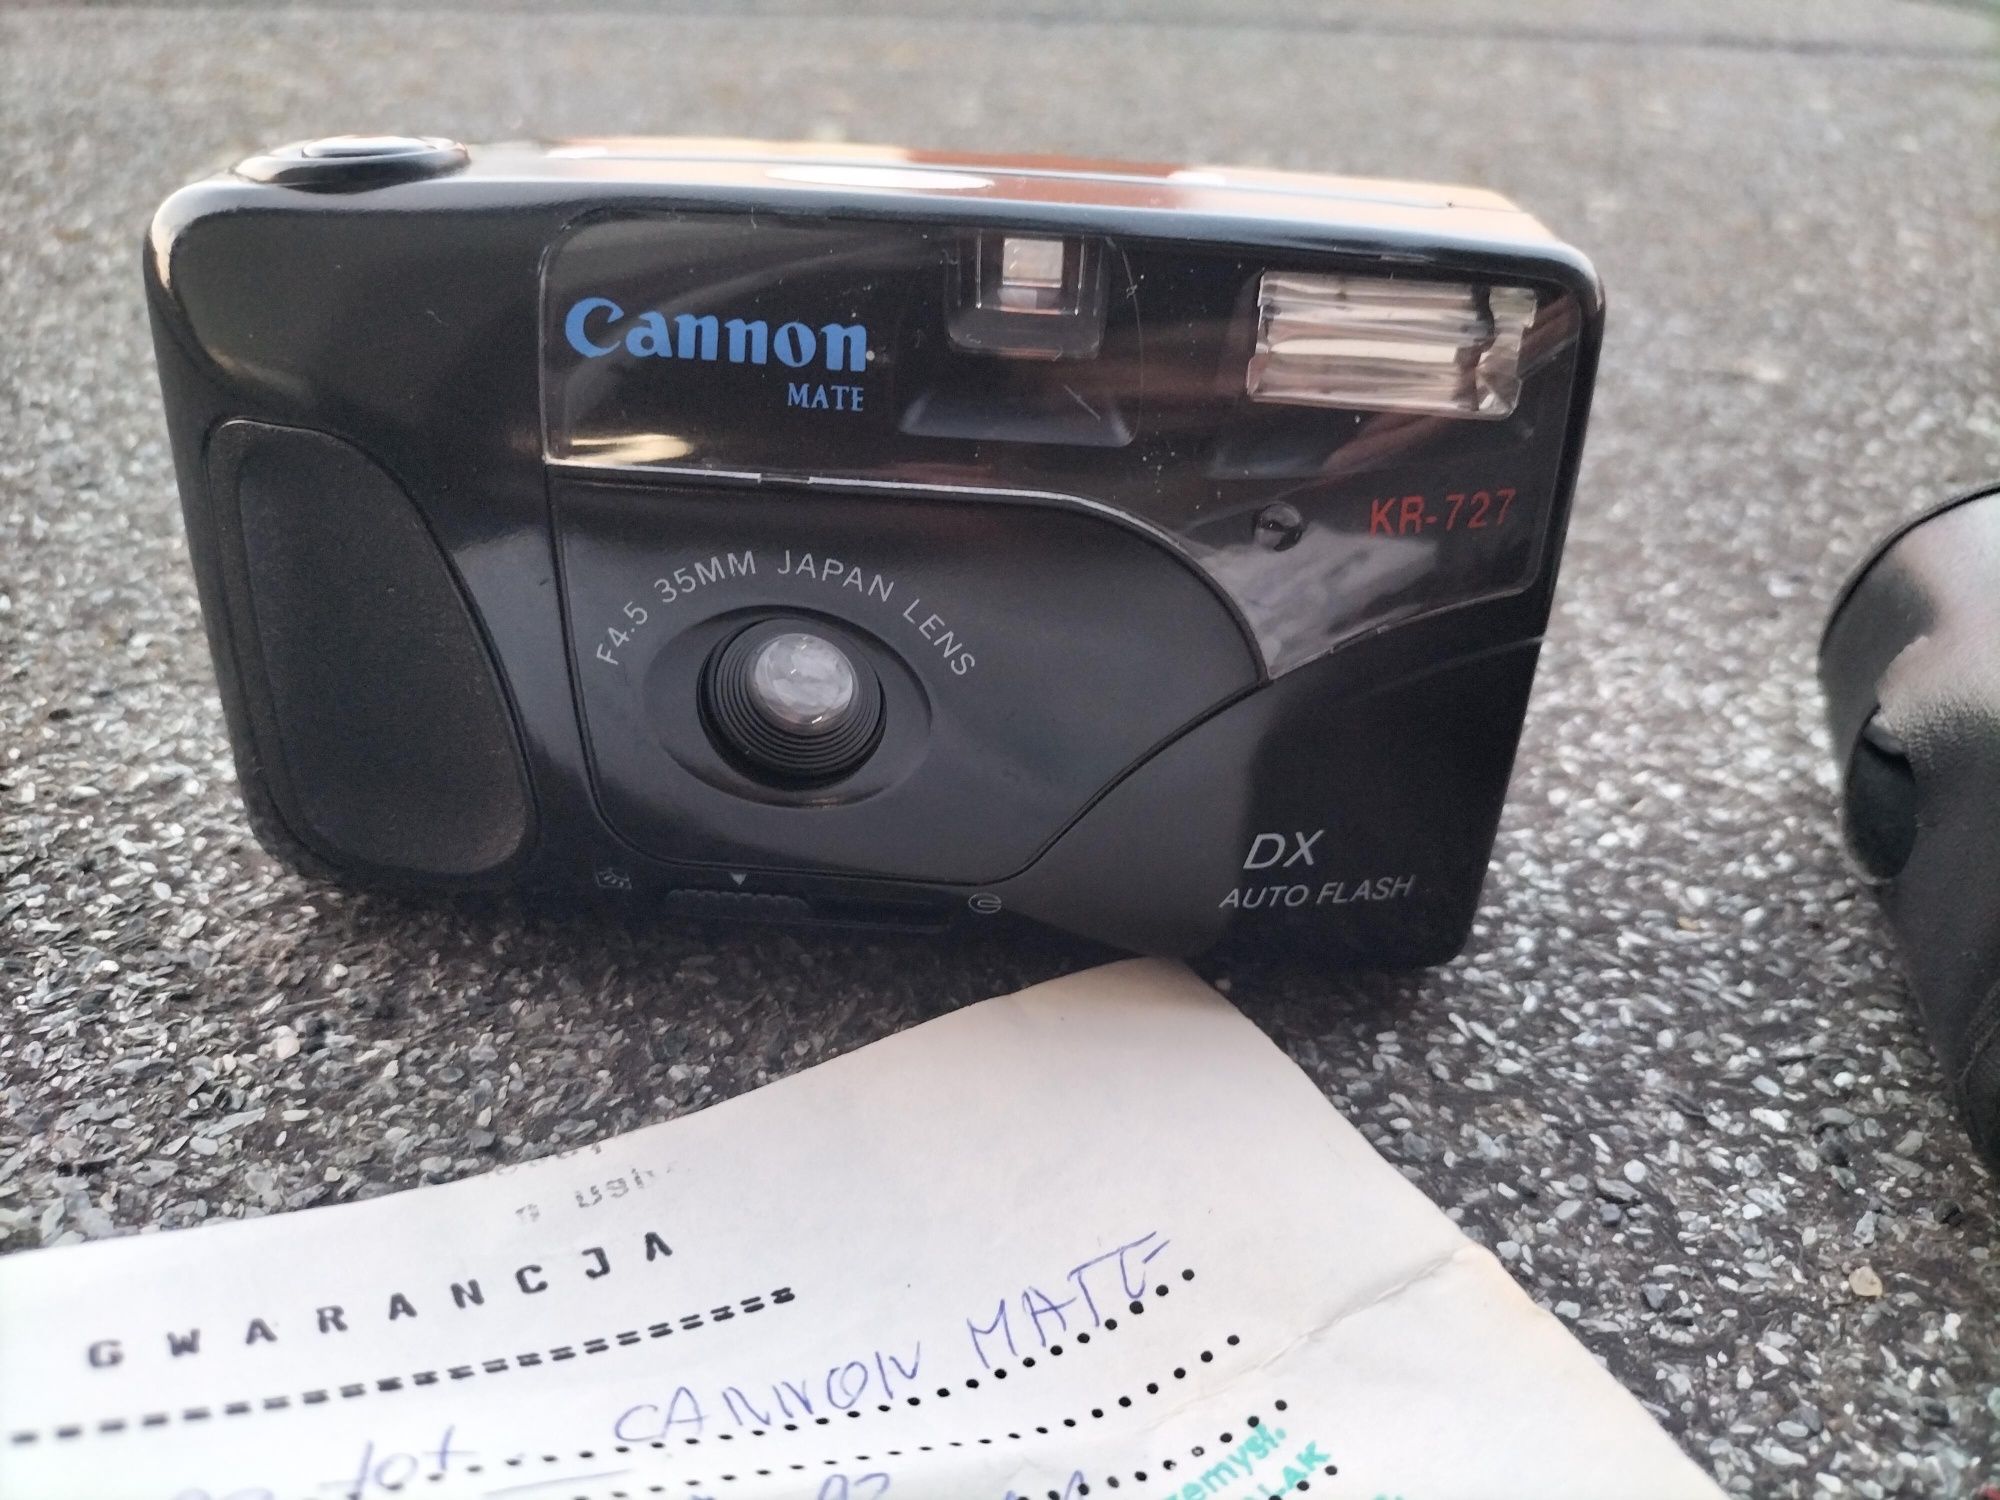 Aparat analogowy Canon KR-727 jak nowy karta gwarancyjna pokrowiec